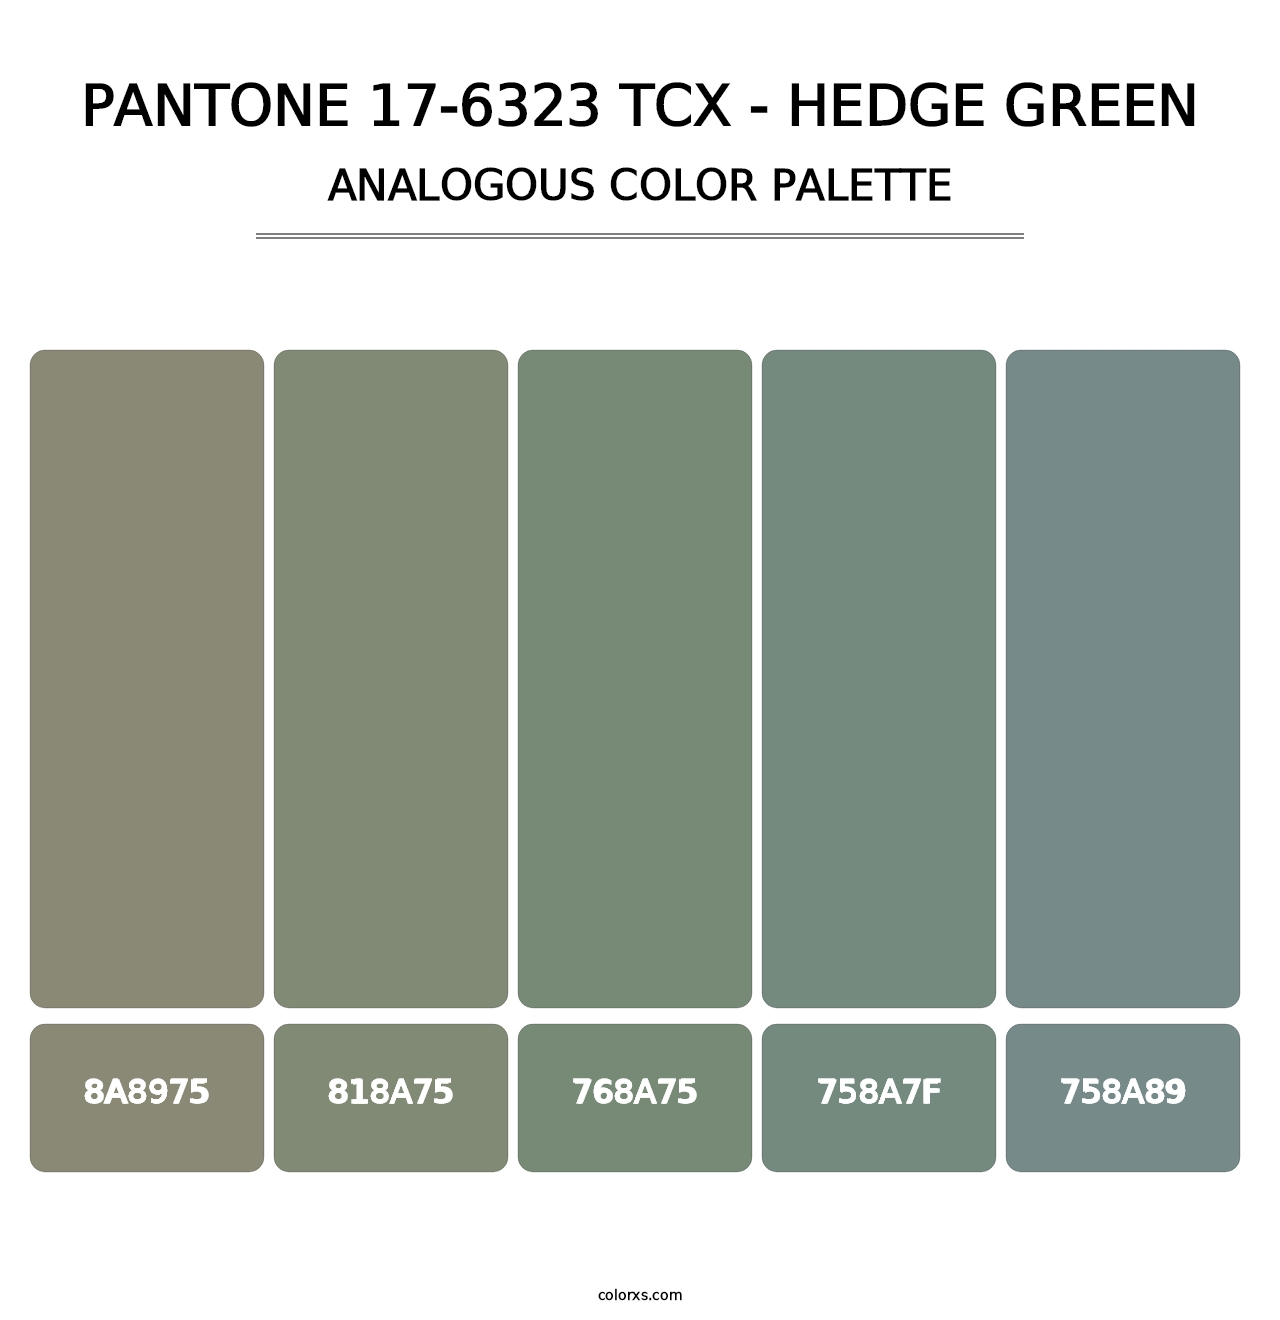 PANTONE 17-6323 TCX - Hedge Green - Analogous Color Palette